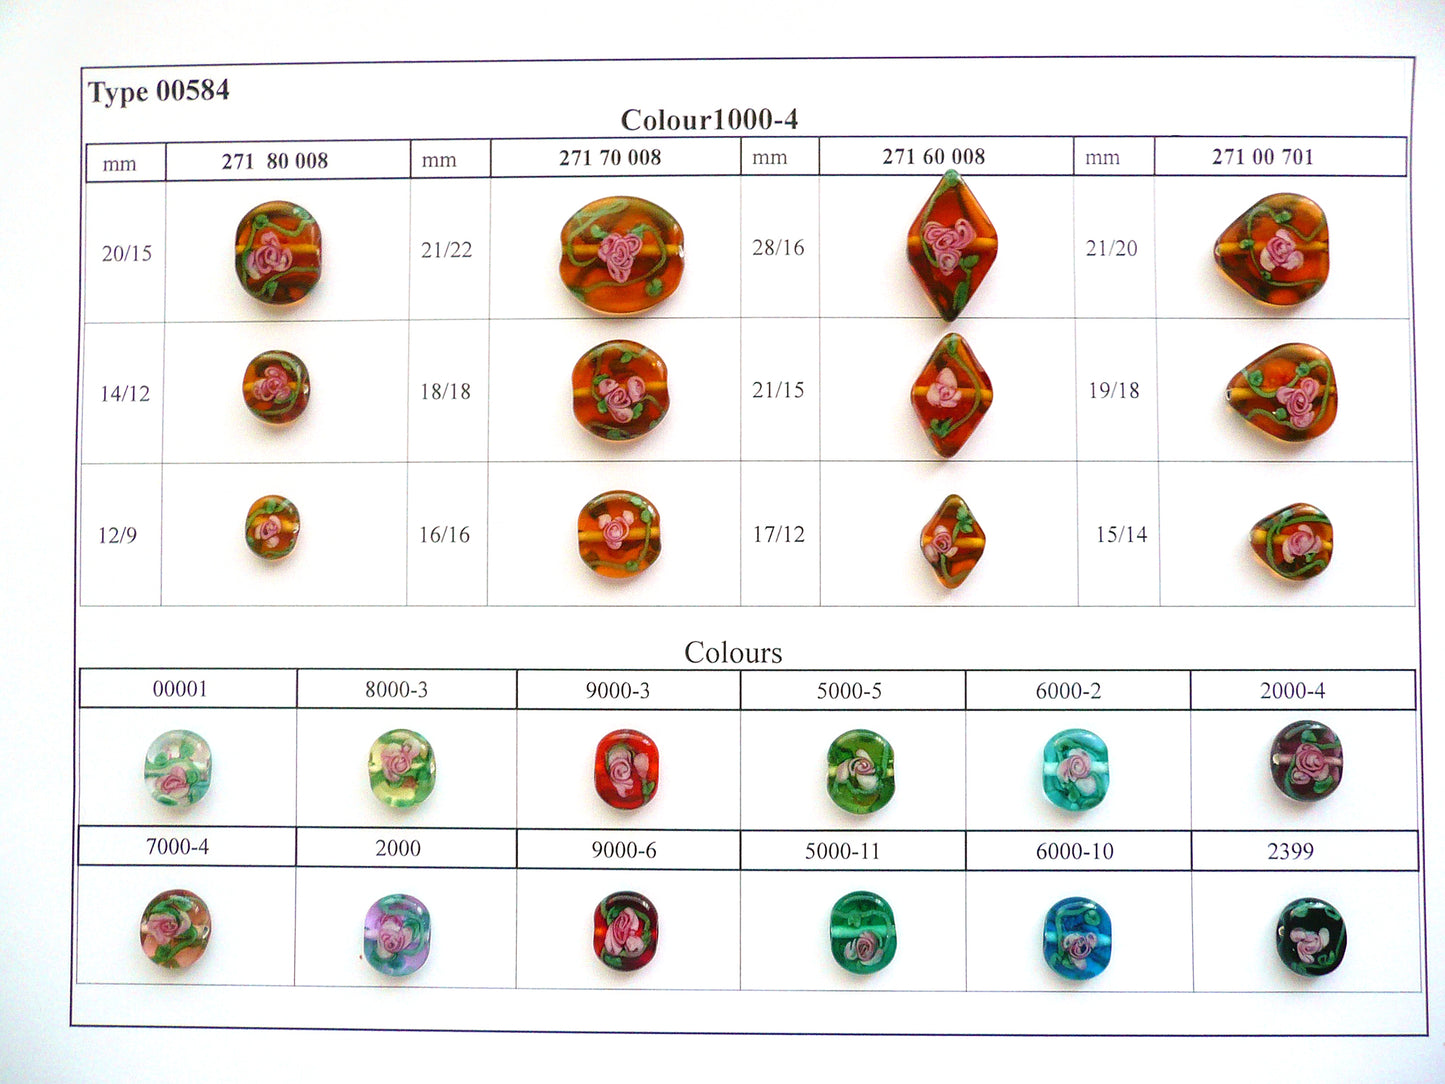 30 颗灯饰珠 584/扁三角形/泪滴 (271-00-701)，手工制作，宝仕奥莎玻璃，捷克共和国